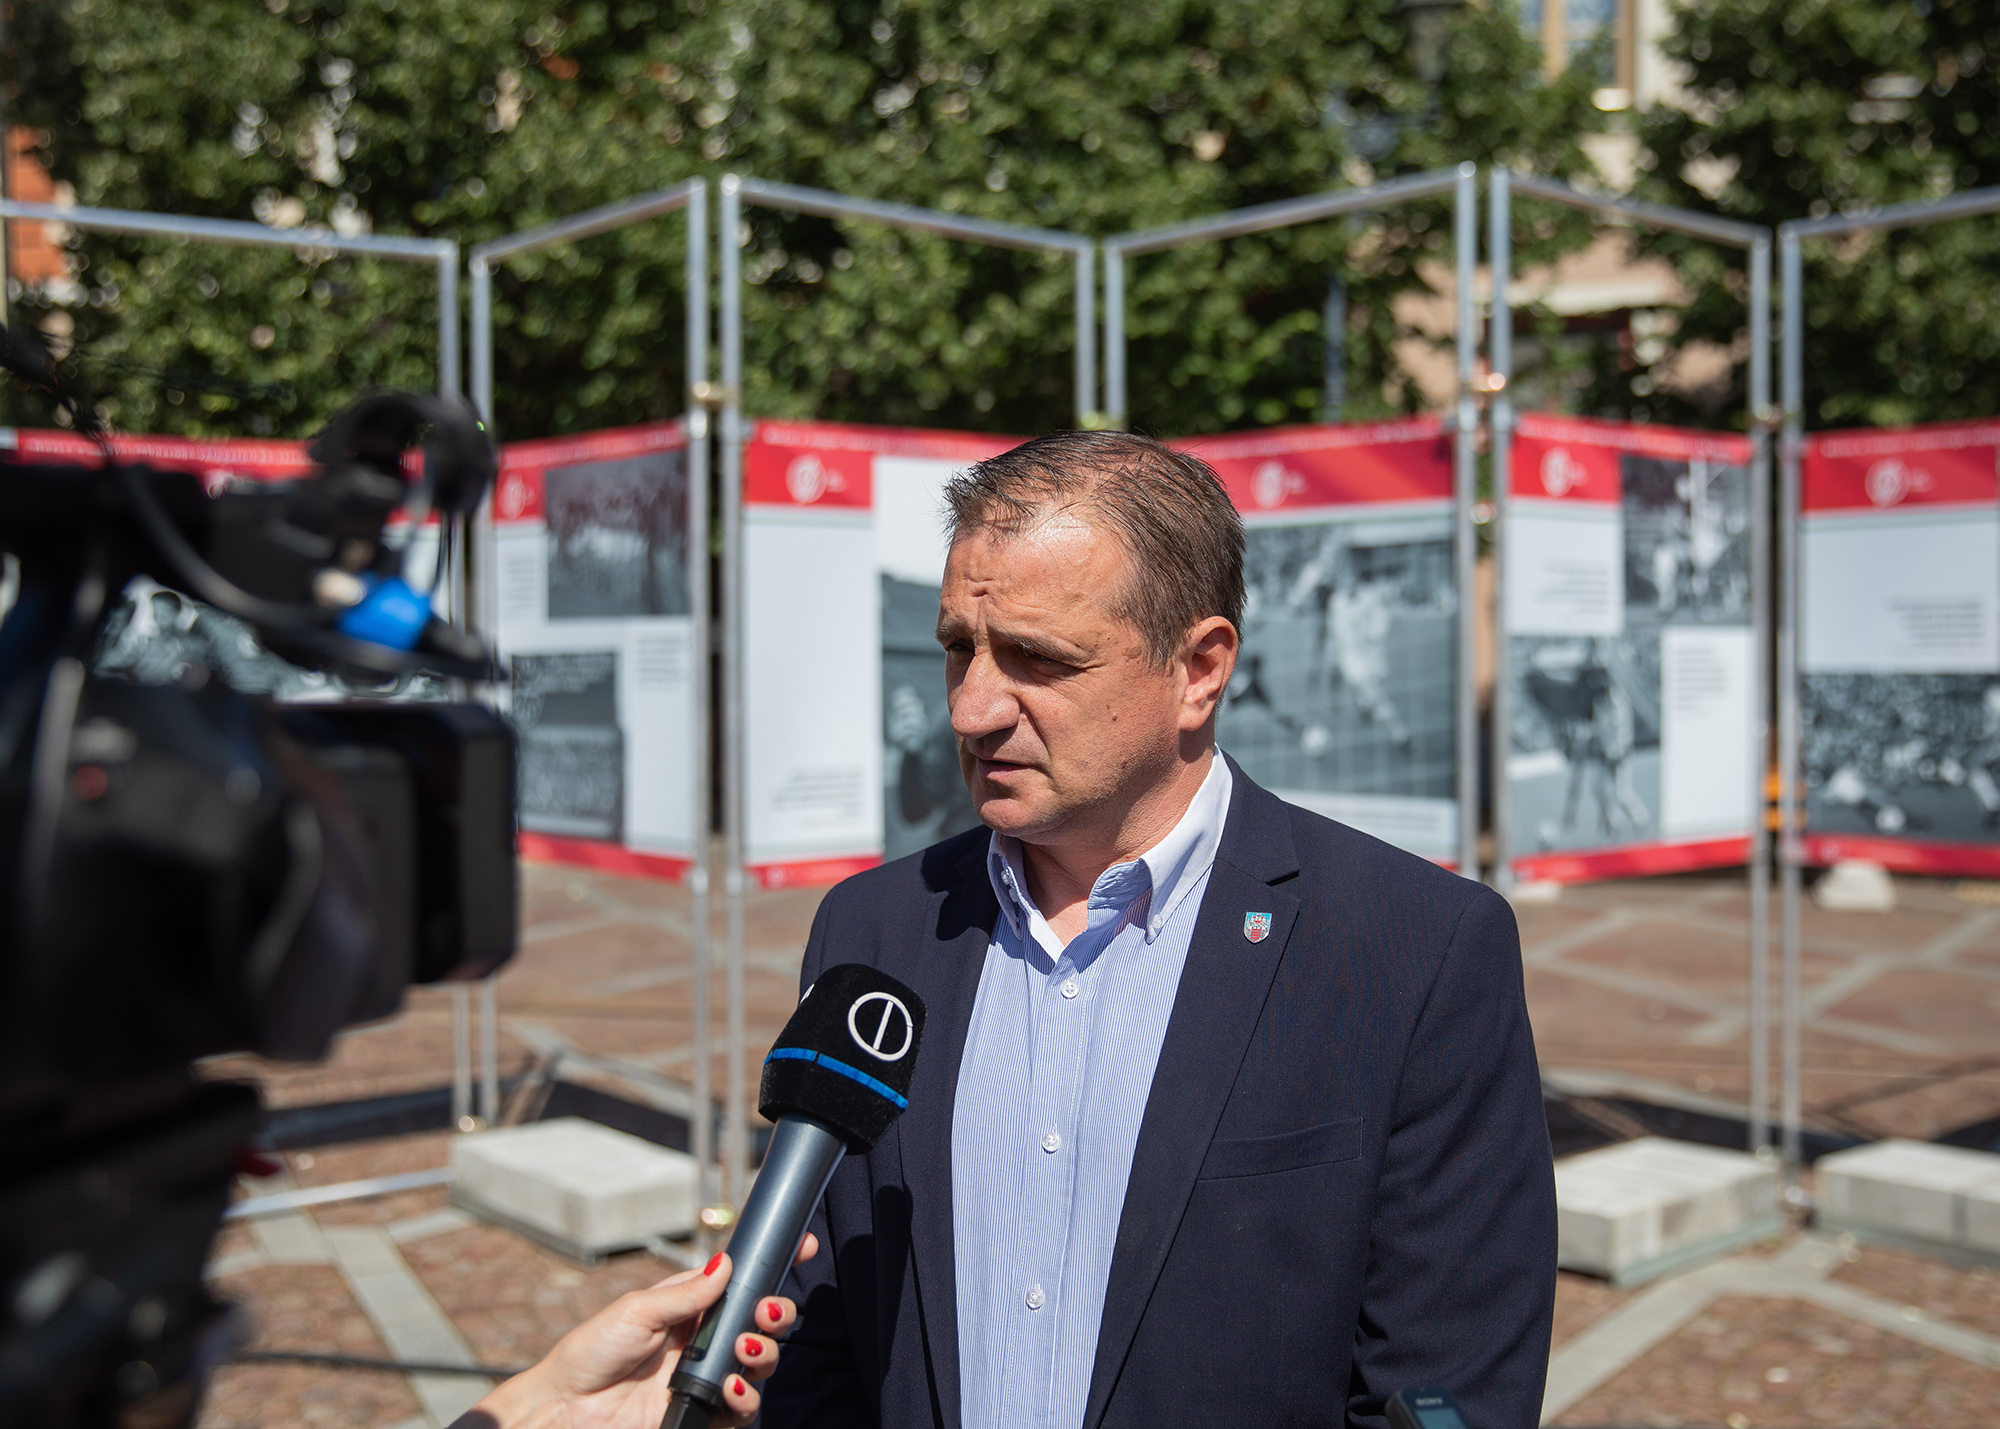 A Mol-vezér unokaöccse válthatja Völner Pált a Fidesz választókerületi elnöki posztján